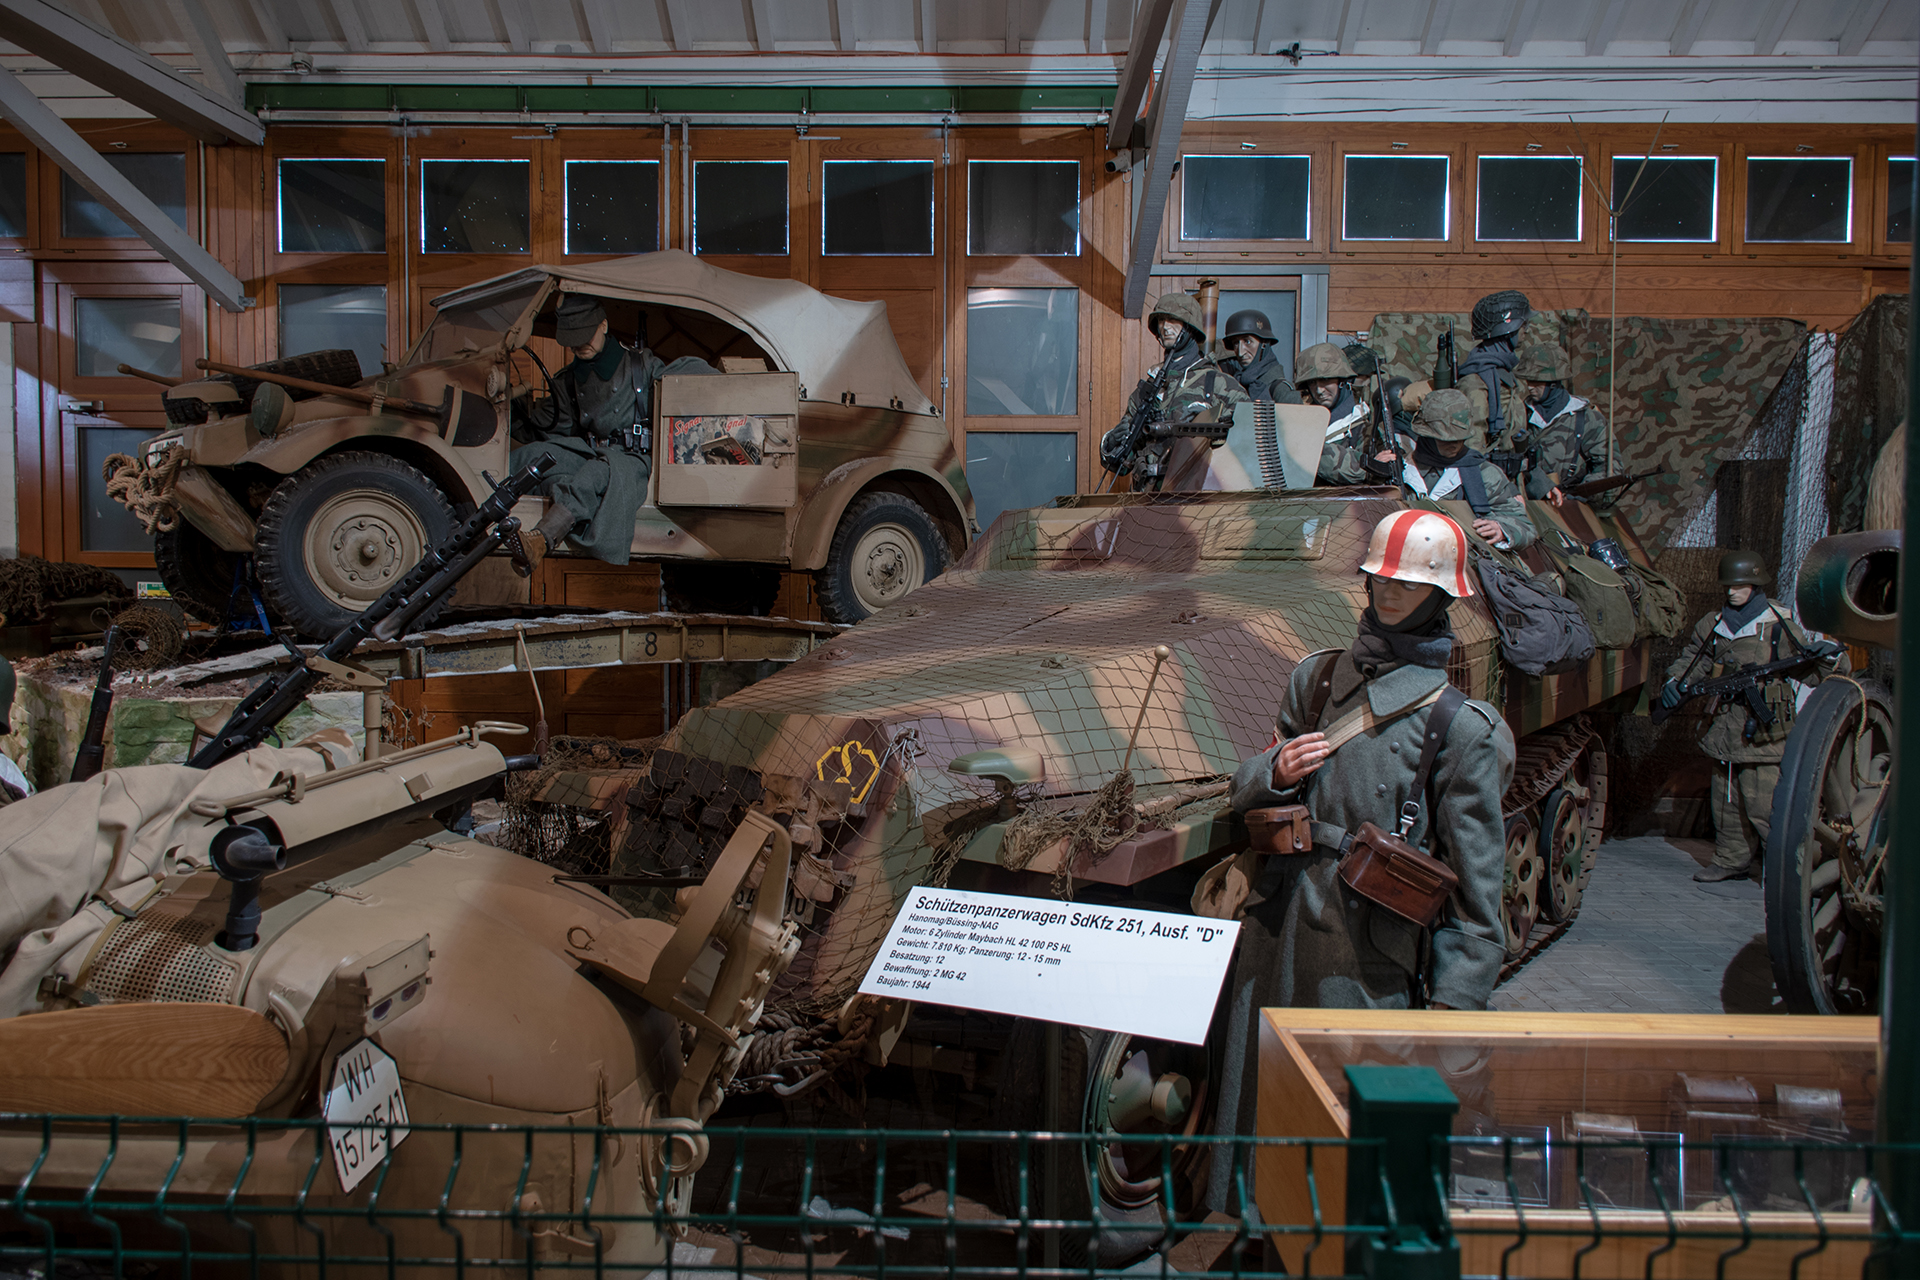 Hanomag Schützenpanzerwagen Sd.Kfz. 251 1944 front - Musée National d'Histoire Militaire, Diekirch